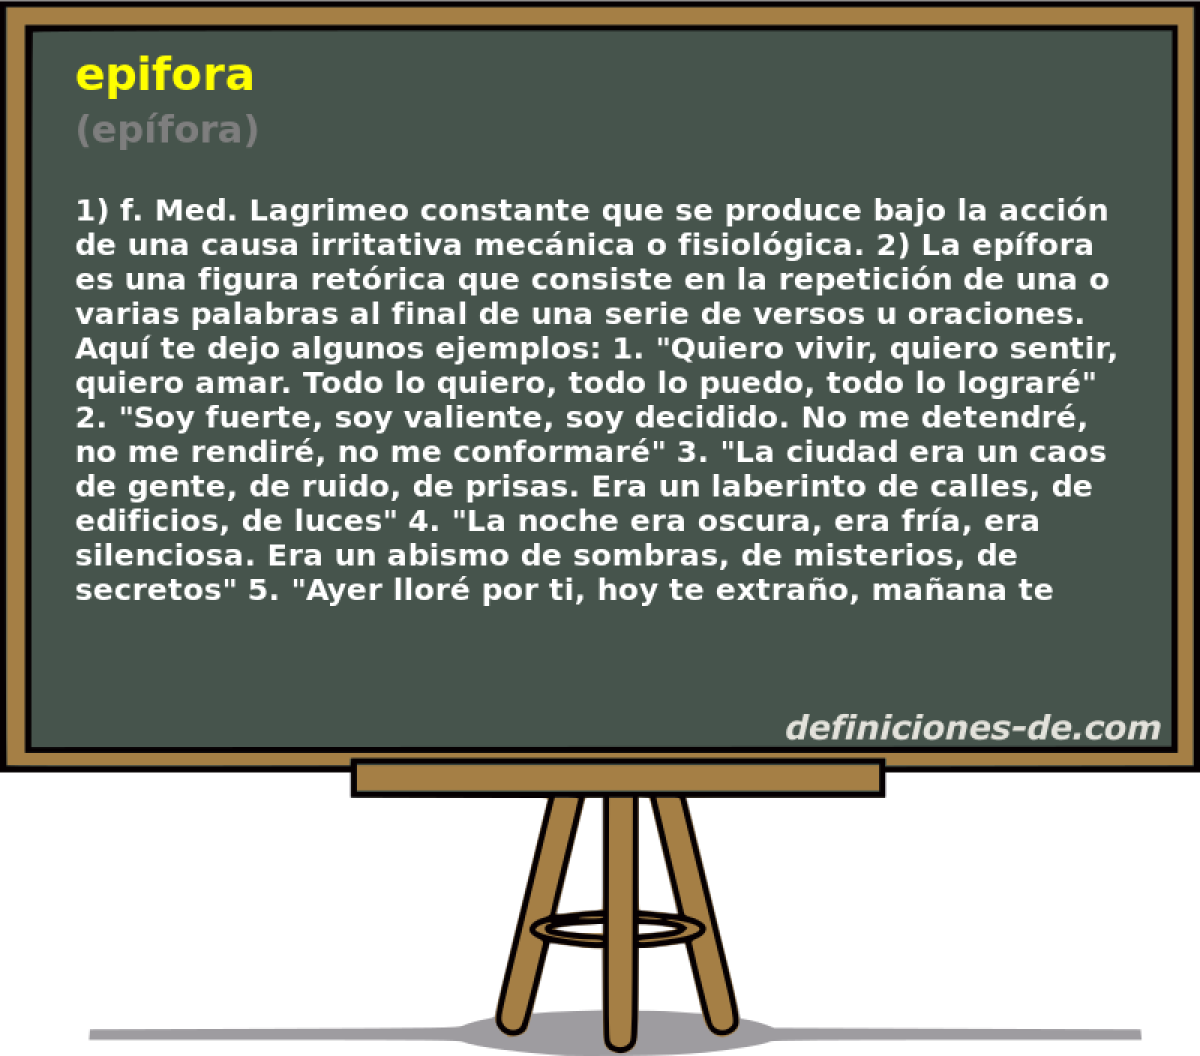 epifora (epfora)